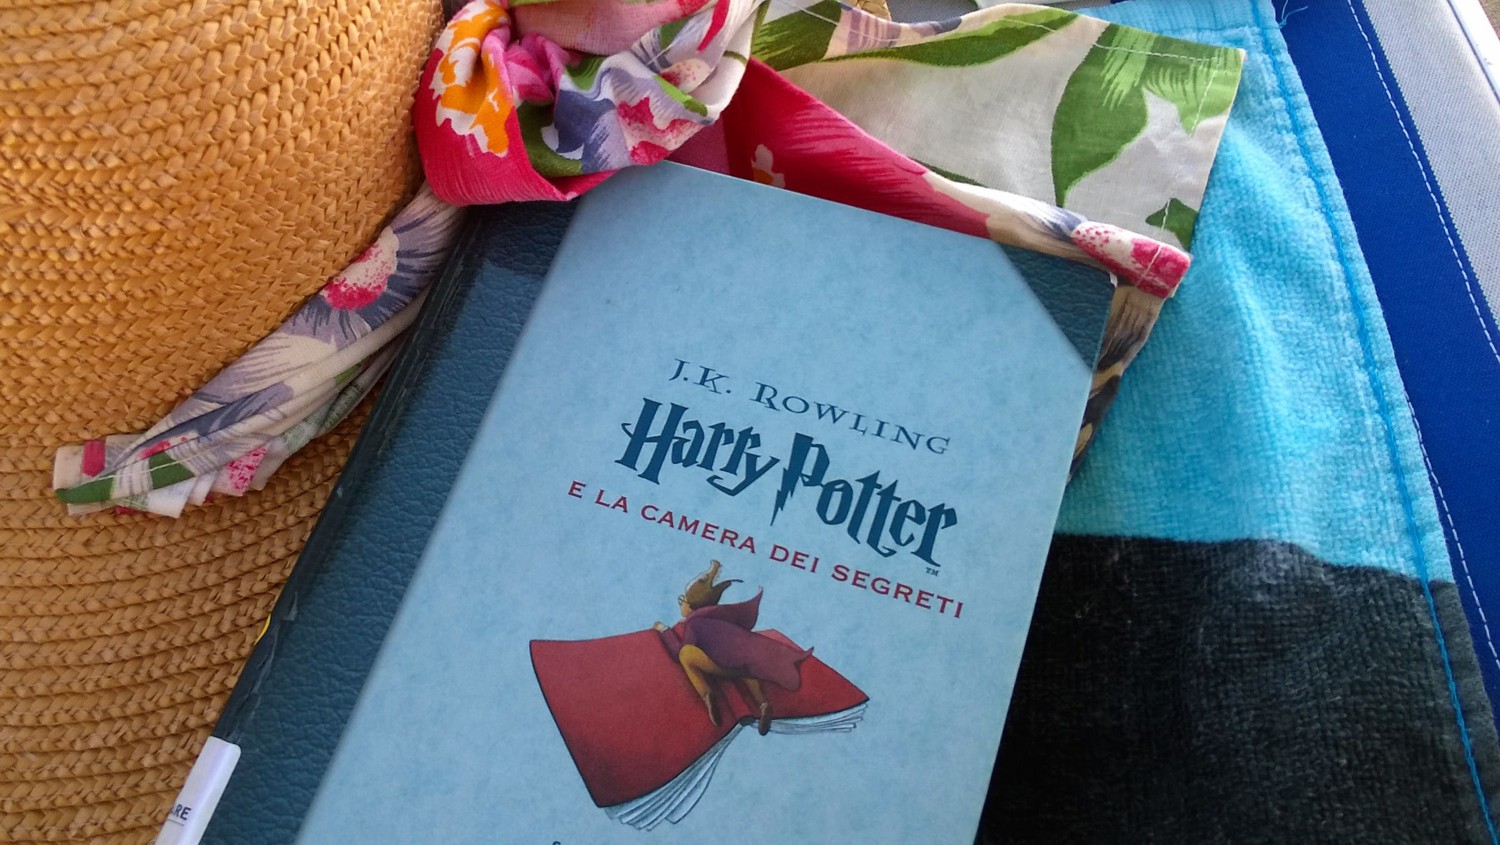 LIBRI Harry Potter e la camera dei segreti (J.K. Rowling)